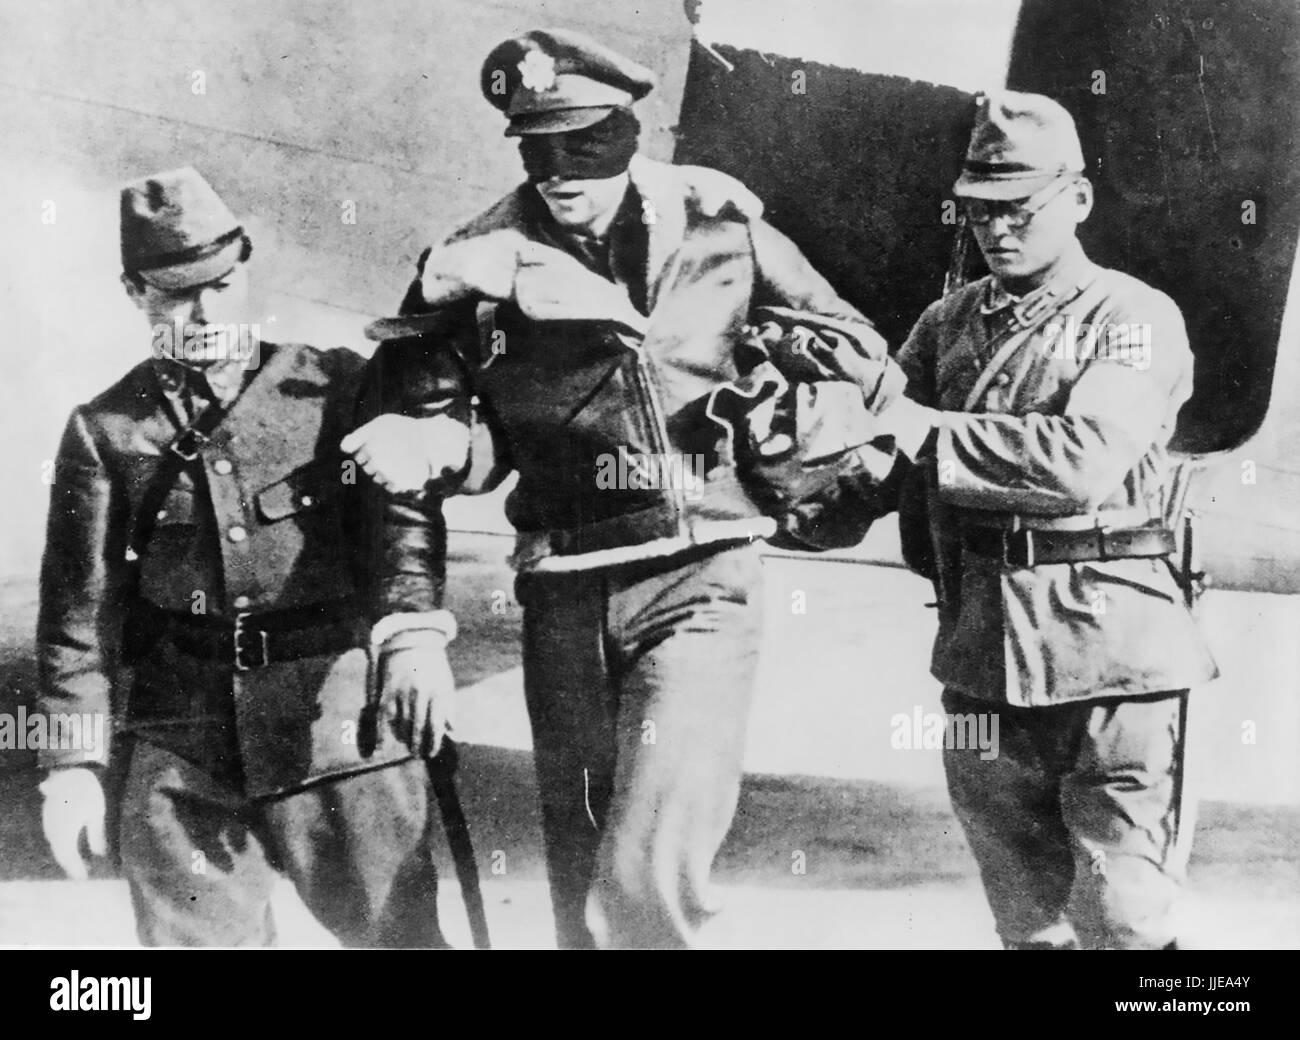 Le RAID de DOOLITTLE SUR TOKYO 18 avril 1942. L'Armée américaine capturé Airforce Lt Robert Hite, co-pilote d'un B-25B du 34th Bomb Squadron, est dirigé à partir d'un avion de transport japonais. Il avait été libéré d'une prison de Shanghai le 20 août 1945 Banque D'Images